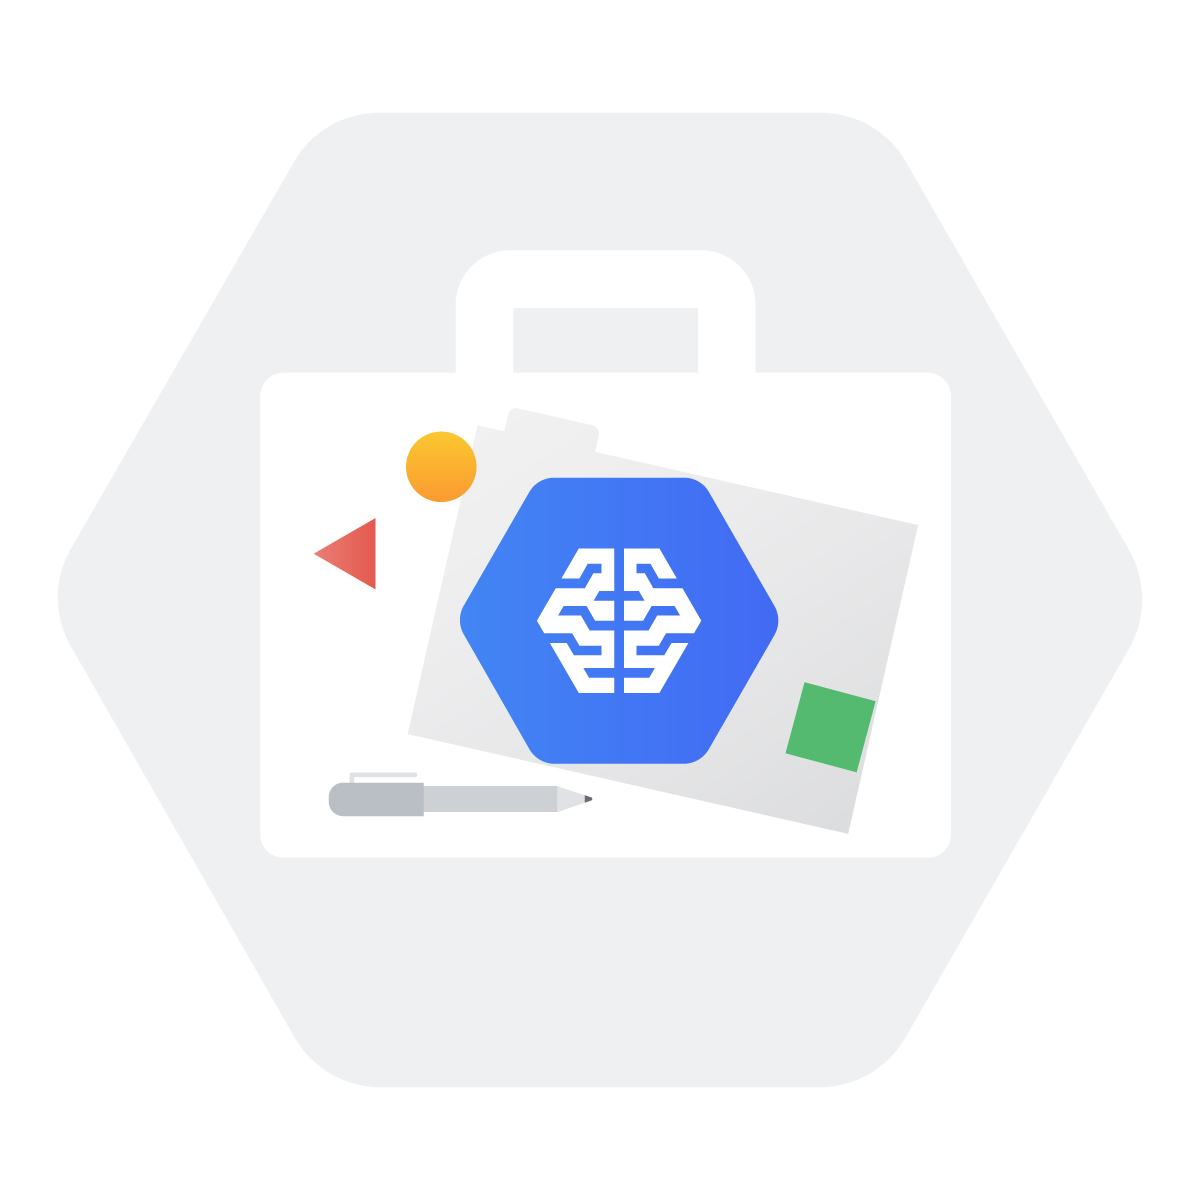 مدیریت پروژه های یادگیری ماشین با Google Cloud